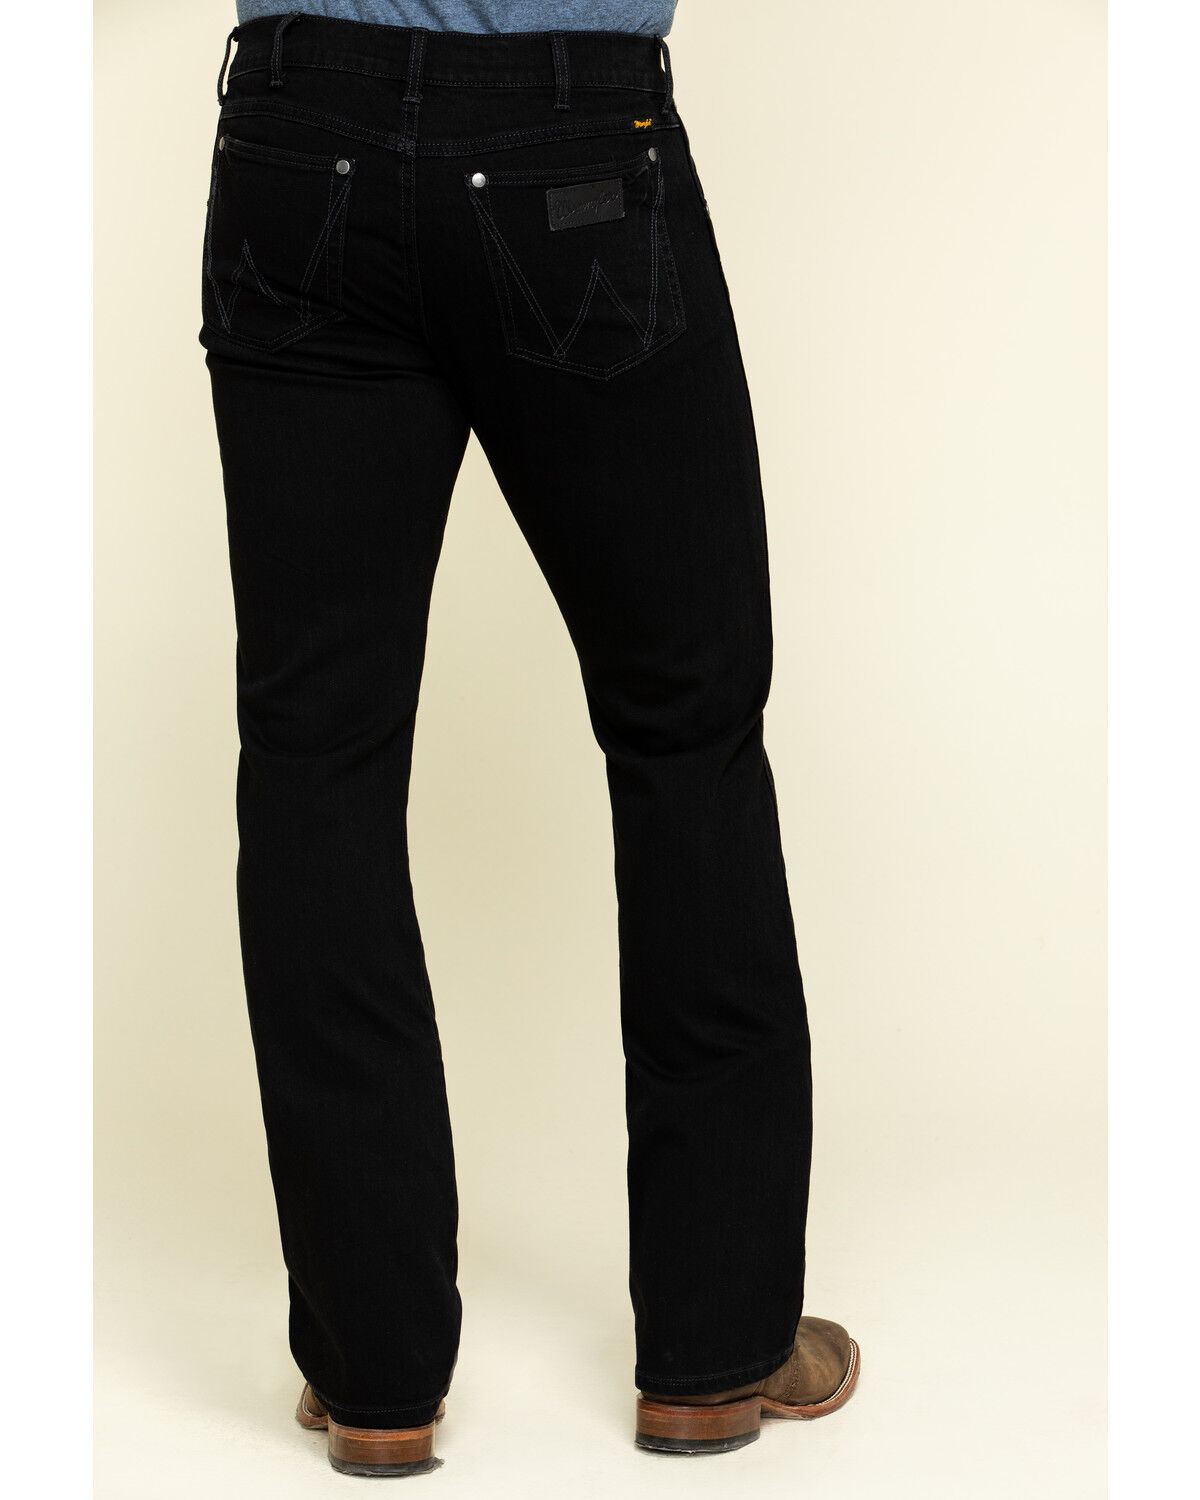 black wrangler retro jeans